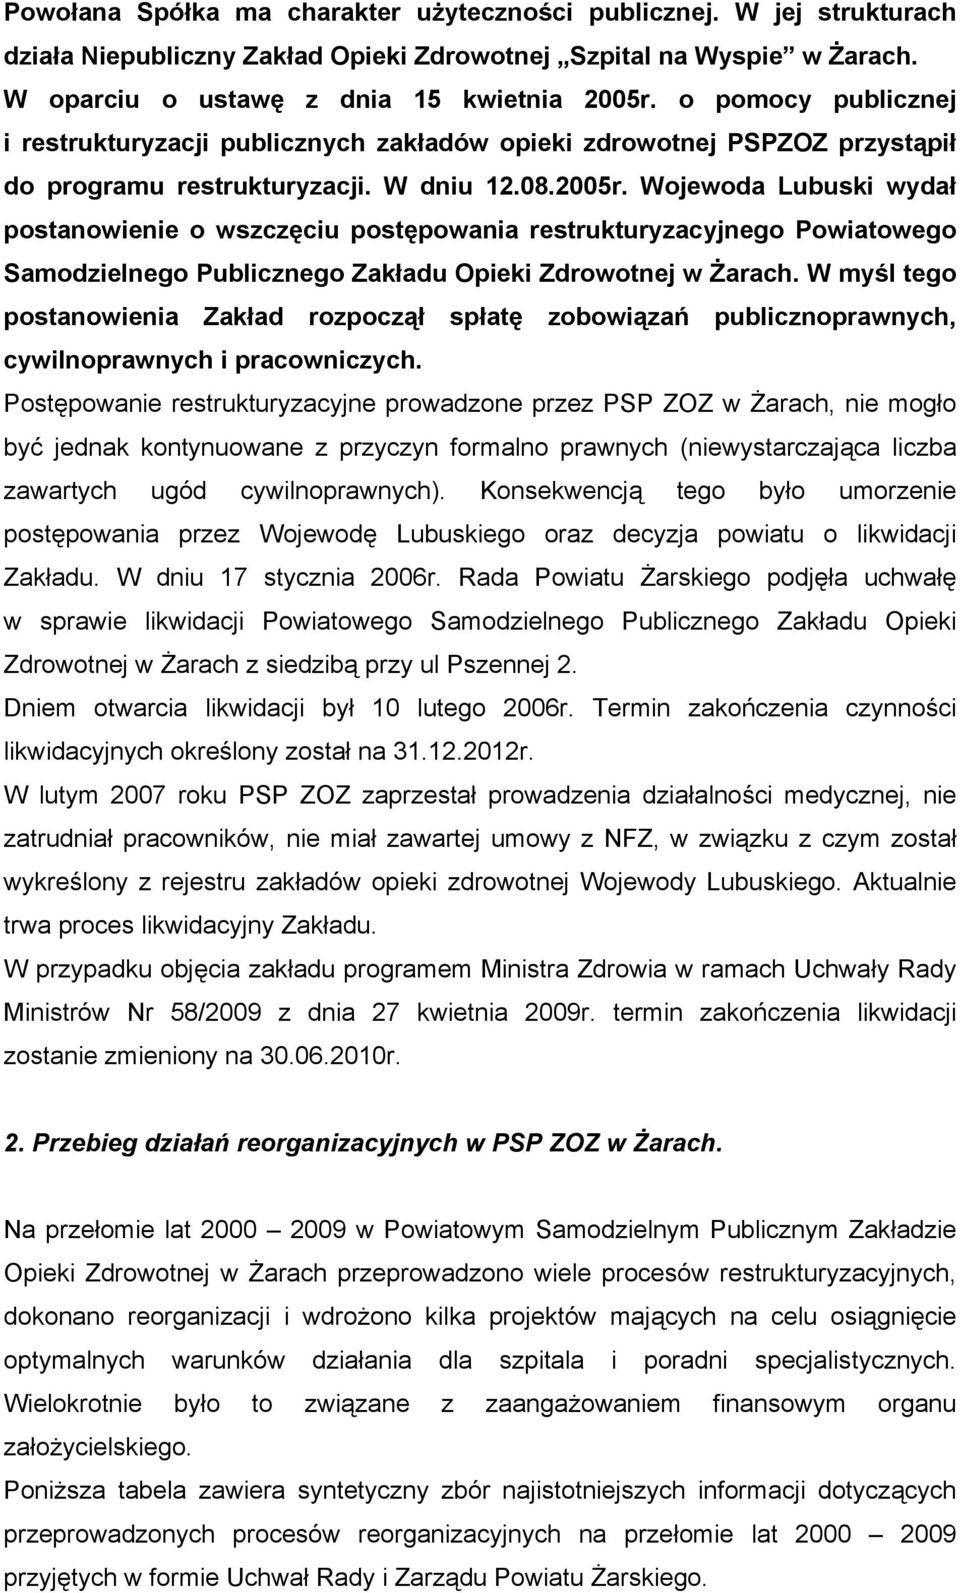 Wojewoda Lubuski wydał postanowienie o wszczęciu postępowania restrukturyzacyjnego Powiatowego Samodzielnego Publicznego Zakładu Opieki Zdrowotnej w Żarach.